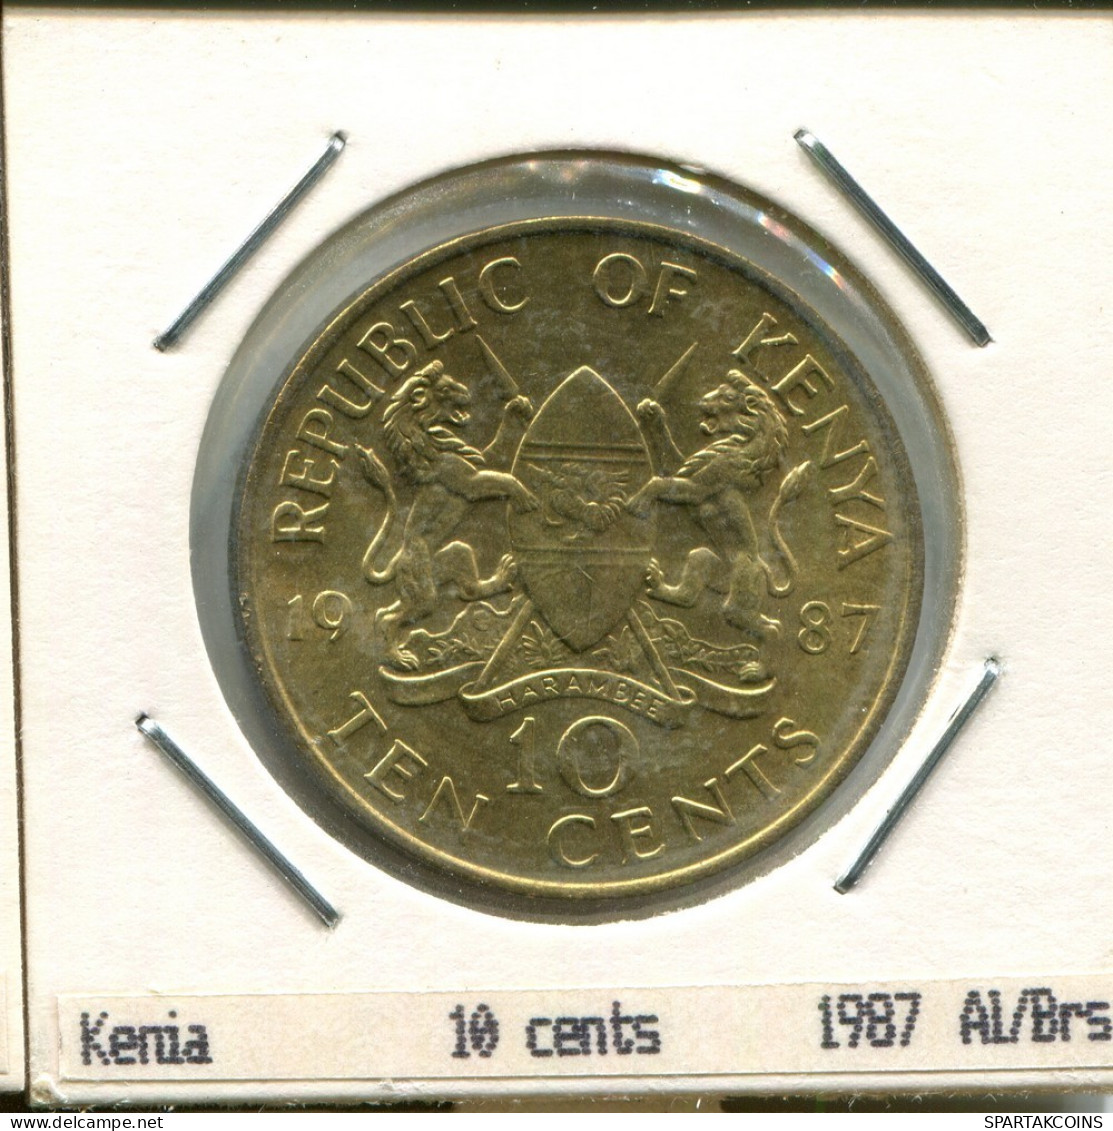 10 CENTS 1987 KENYA Pièce #AS333.F.A - Kenia